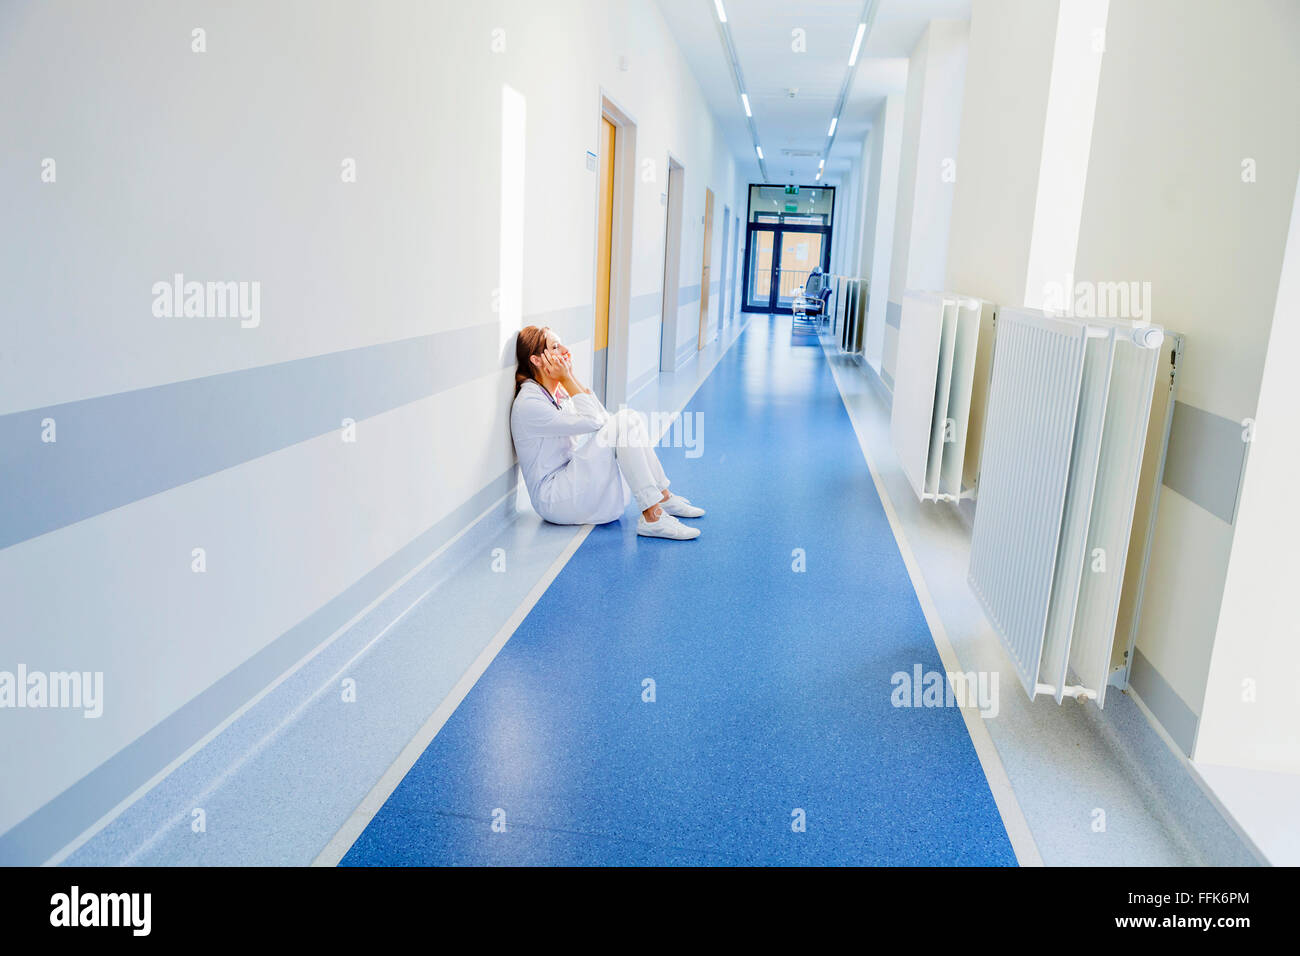 Sobrecargado de trabajo trabajador sanitario sentado en el piso en el pasillo del hospital Foto de stock